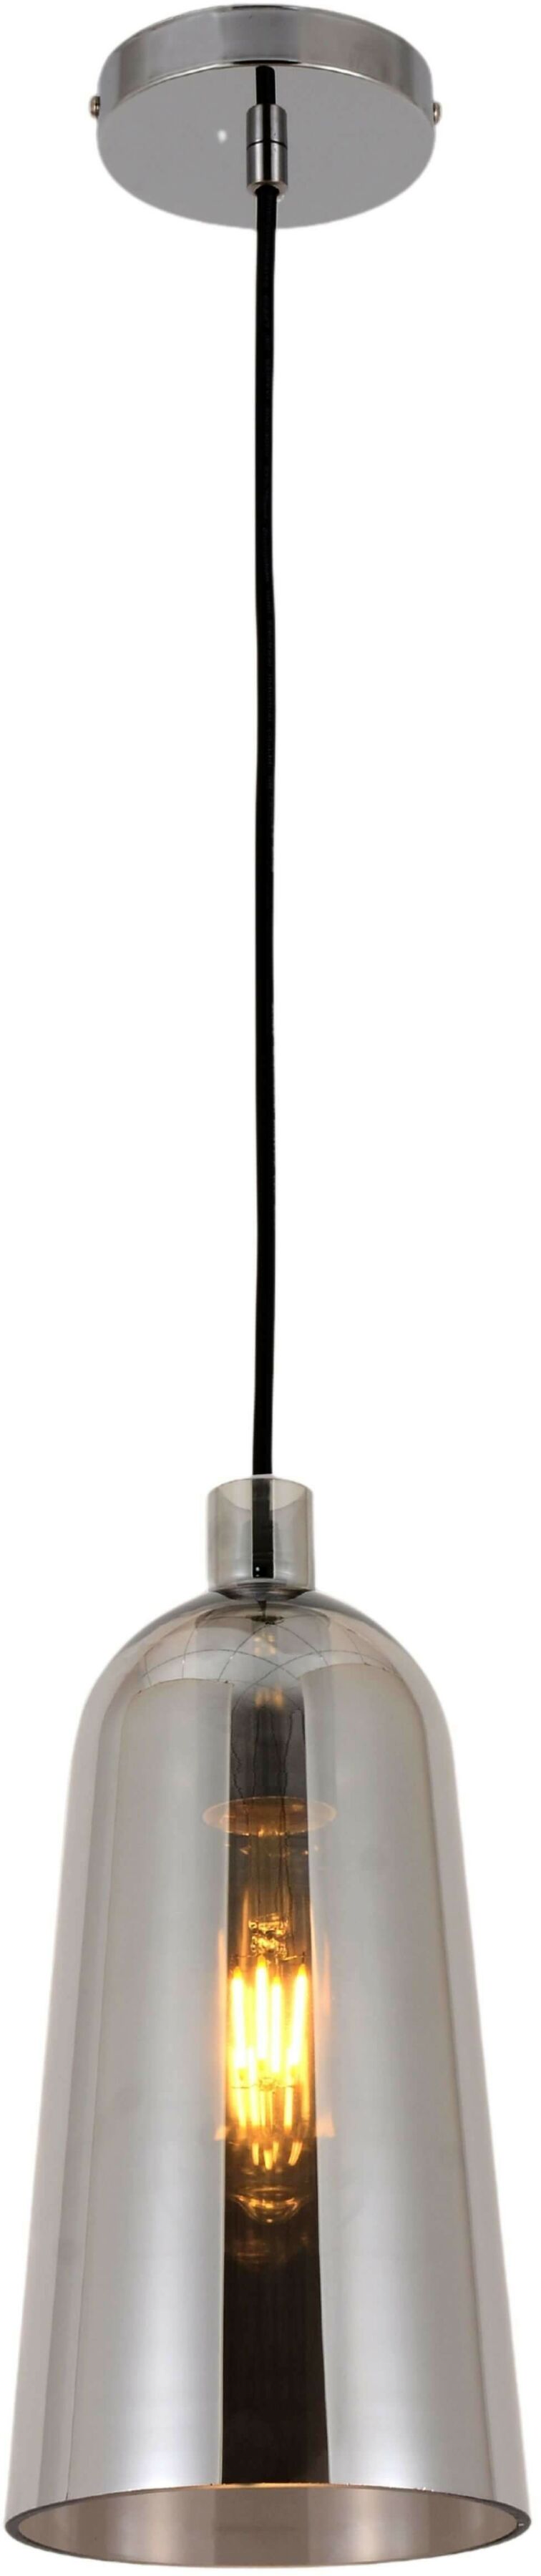 Nordica lampa wisząca dymiona LDP 6814-1 (GR) Lumina Deco // Rabaty w koszyku i darmowa dostawa od 299zł !